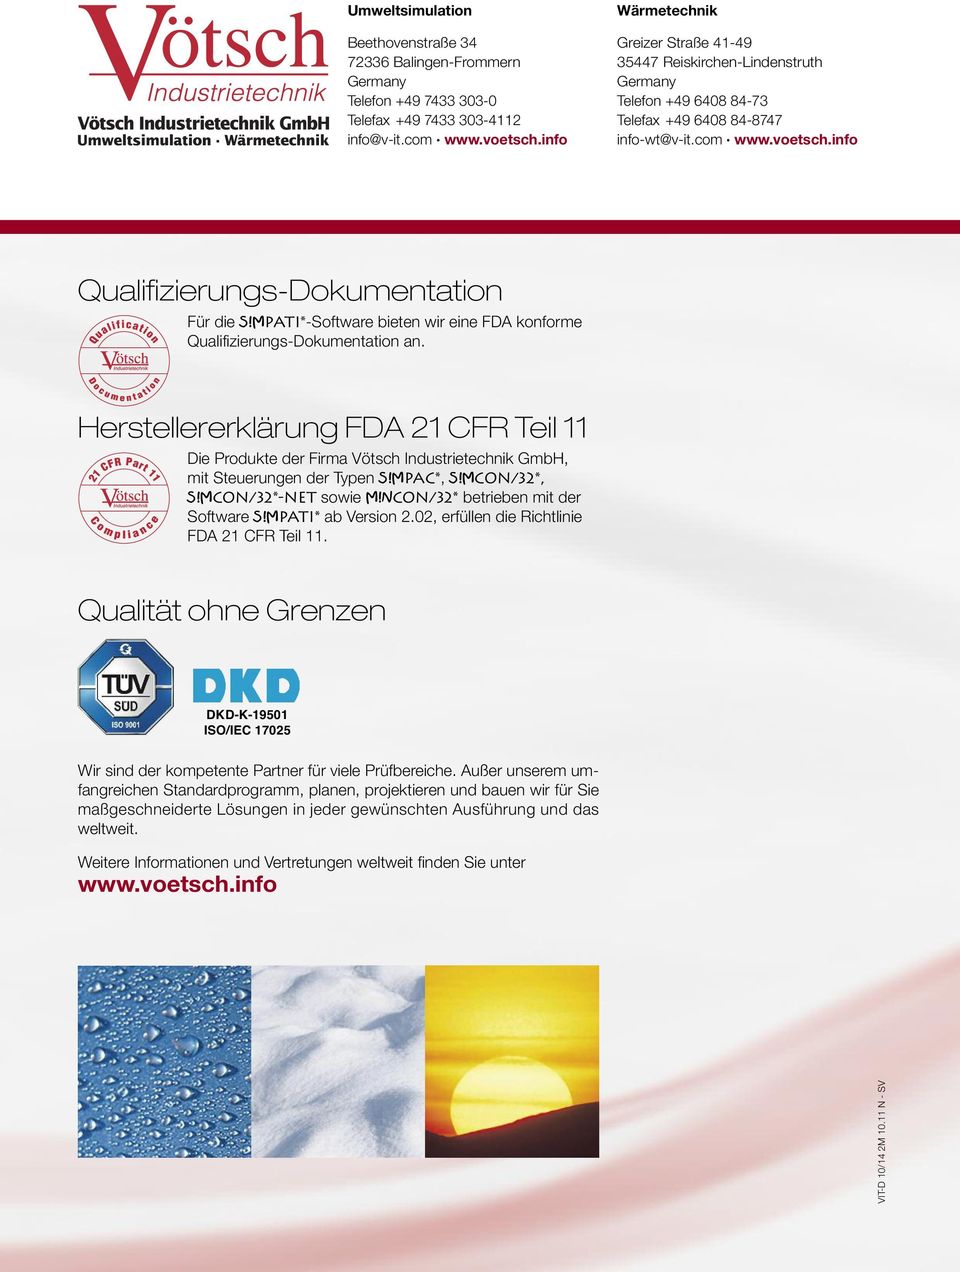 MPATI*-Software bieten wir eine FDA konforme Qualifizierungs-Dokumentation an. Herstellererklärung FDA 21 CFR Teil 11 Die Produkte der Firma Vötsch Industrietechnik GmbH, mit Steuerungen der Typen S!